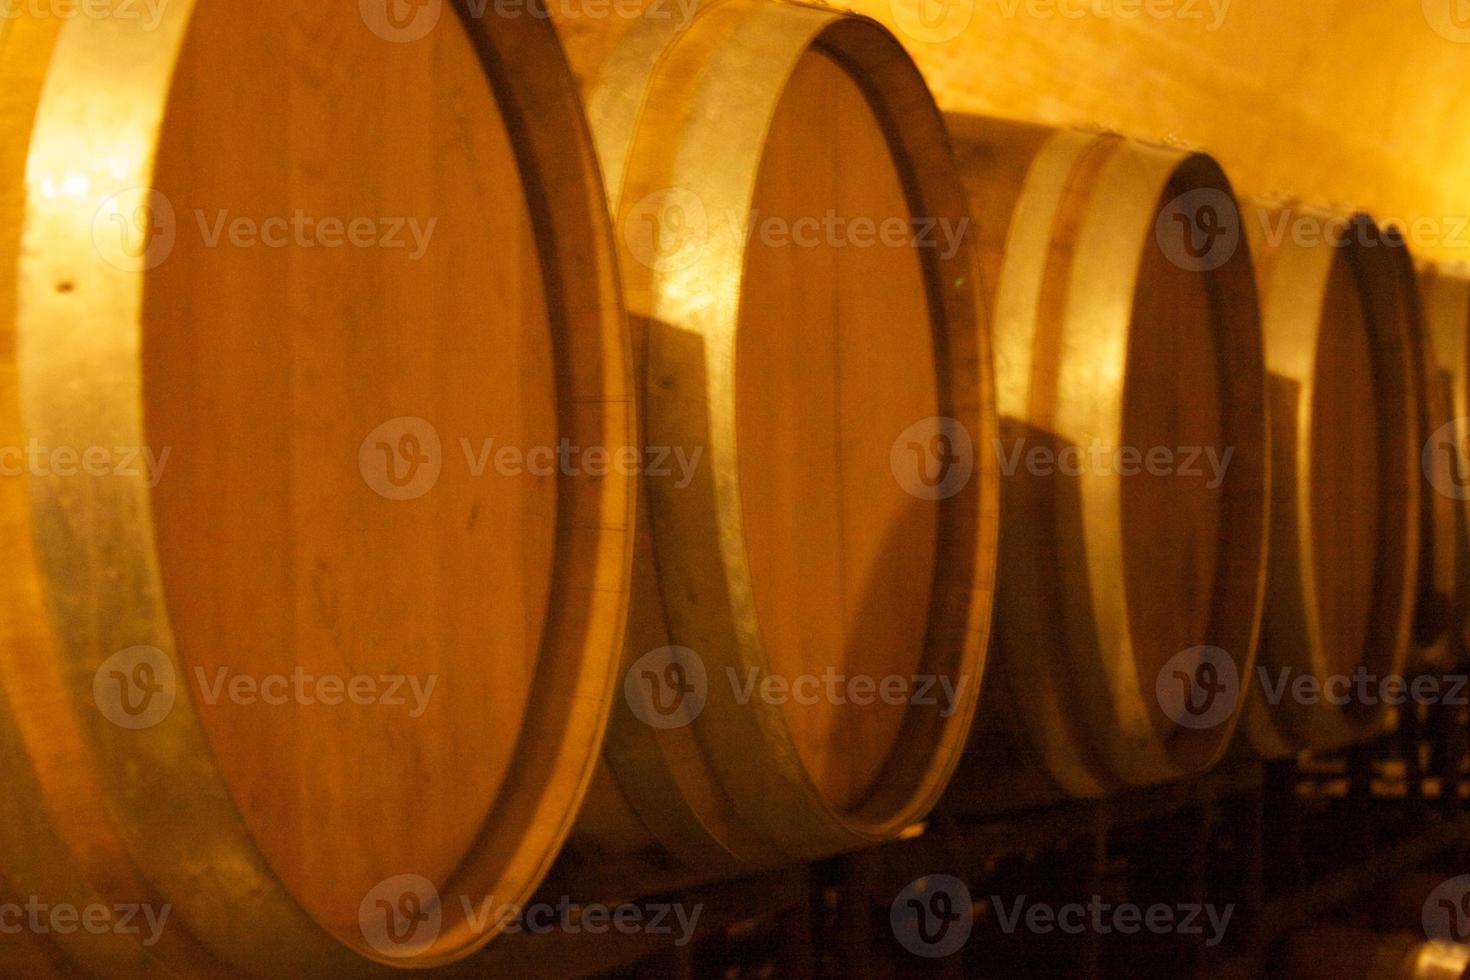 tonneaux de vin photo